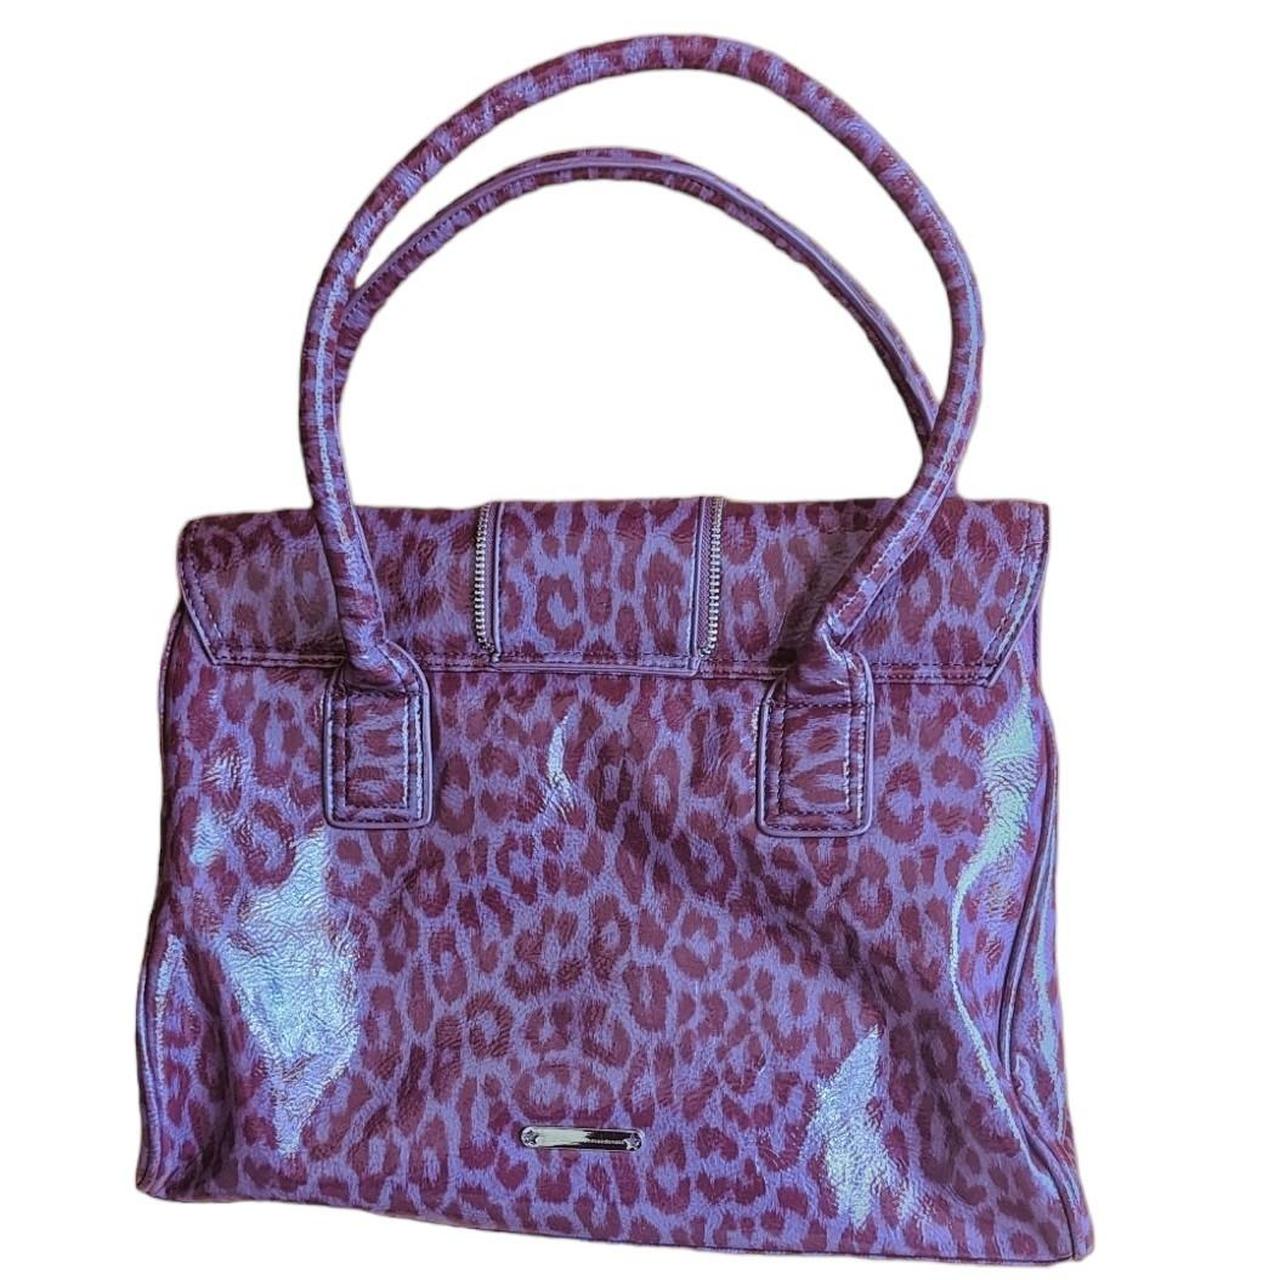 Debenhams Women's Purple Bag (2)